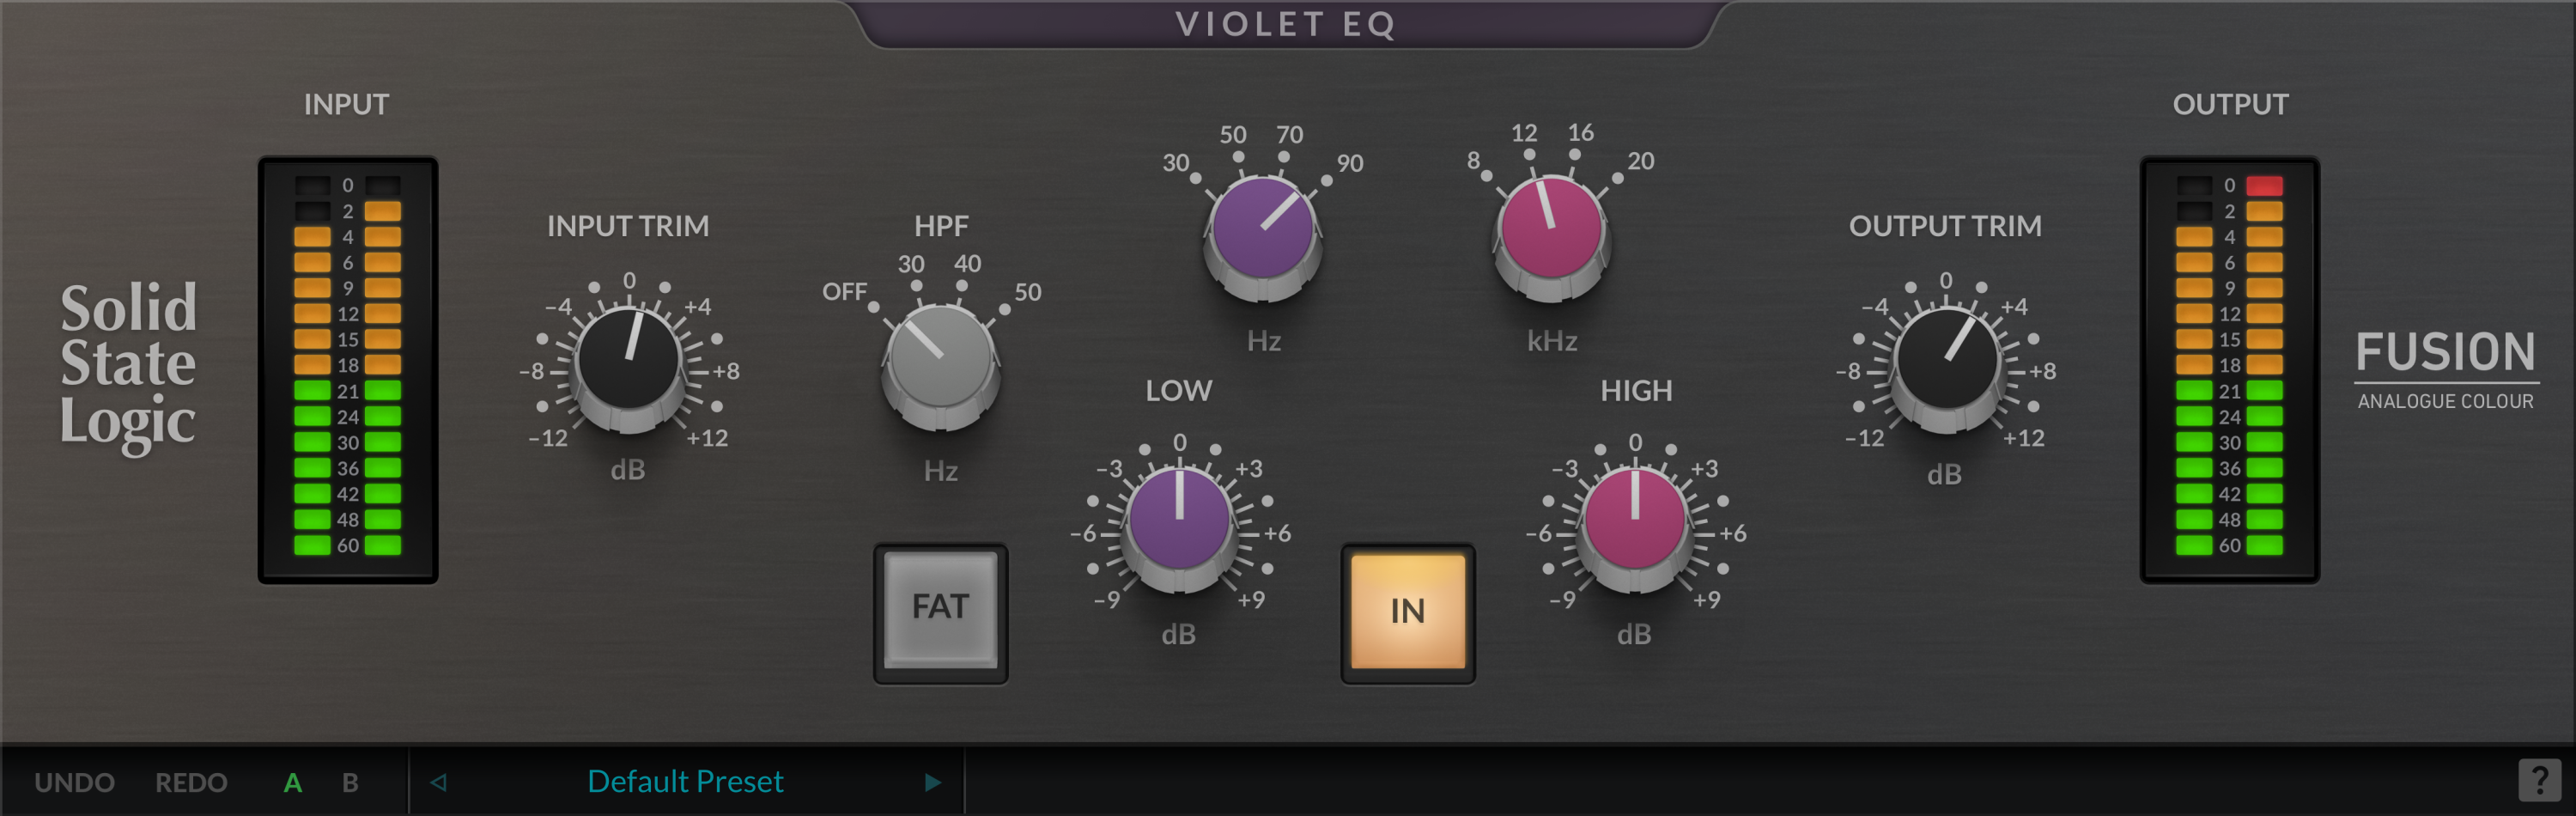 Bundled Item: Solid State Logic Fusion Violet EQ Plug-in